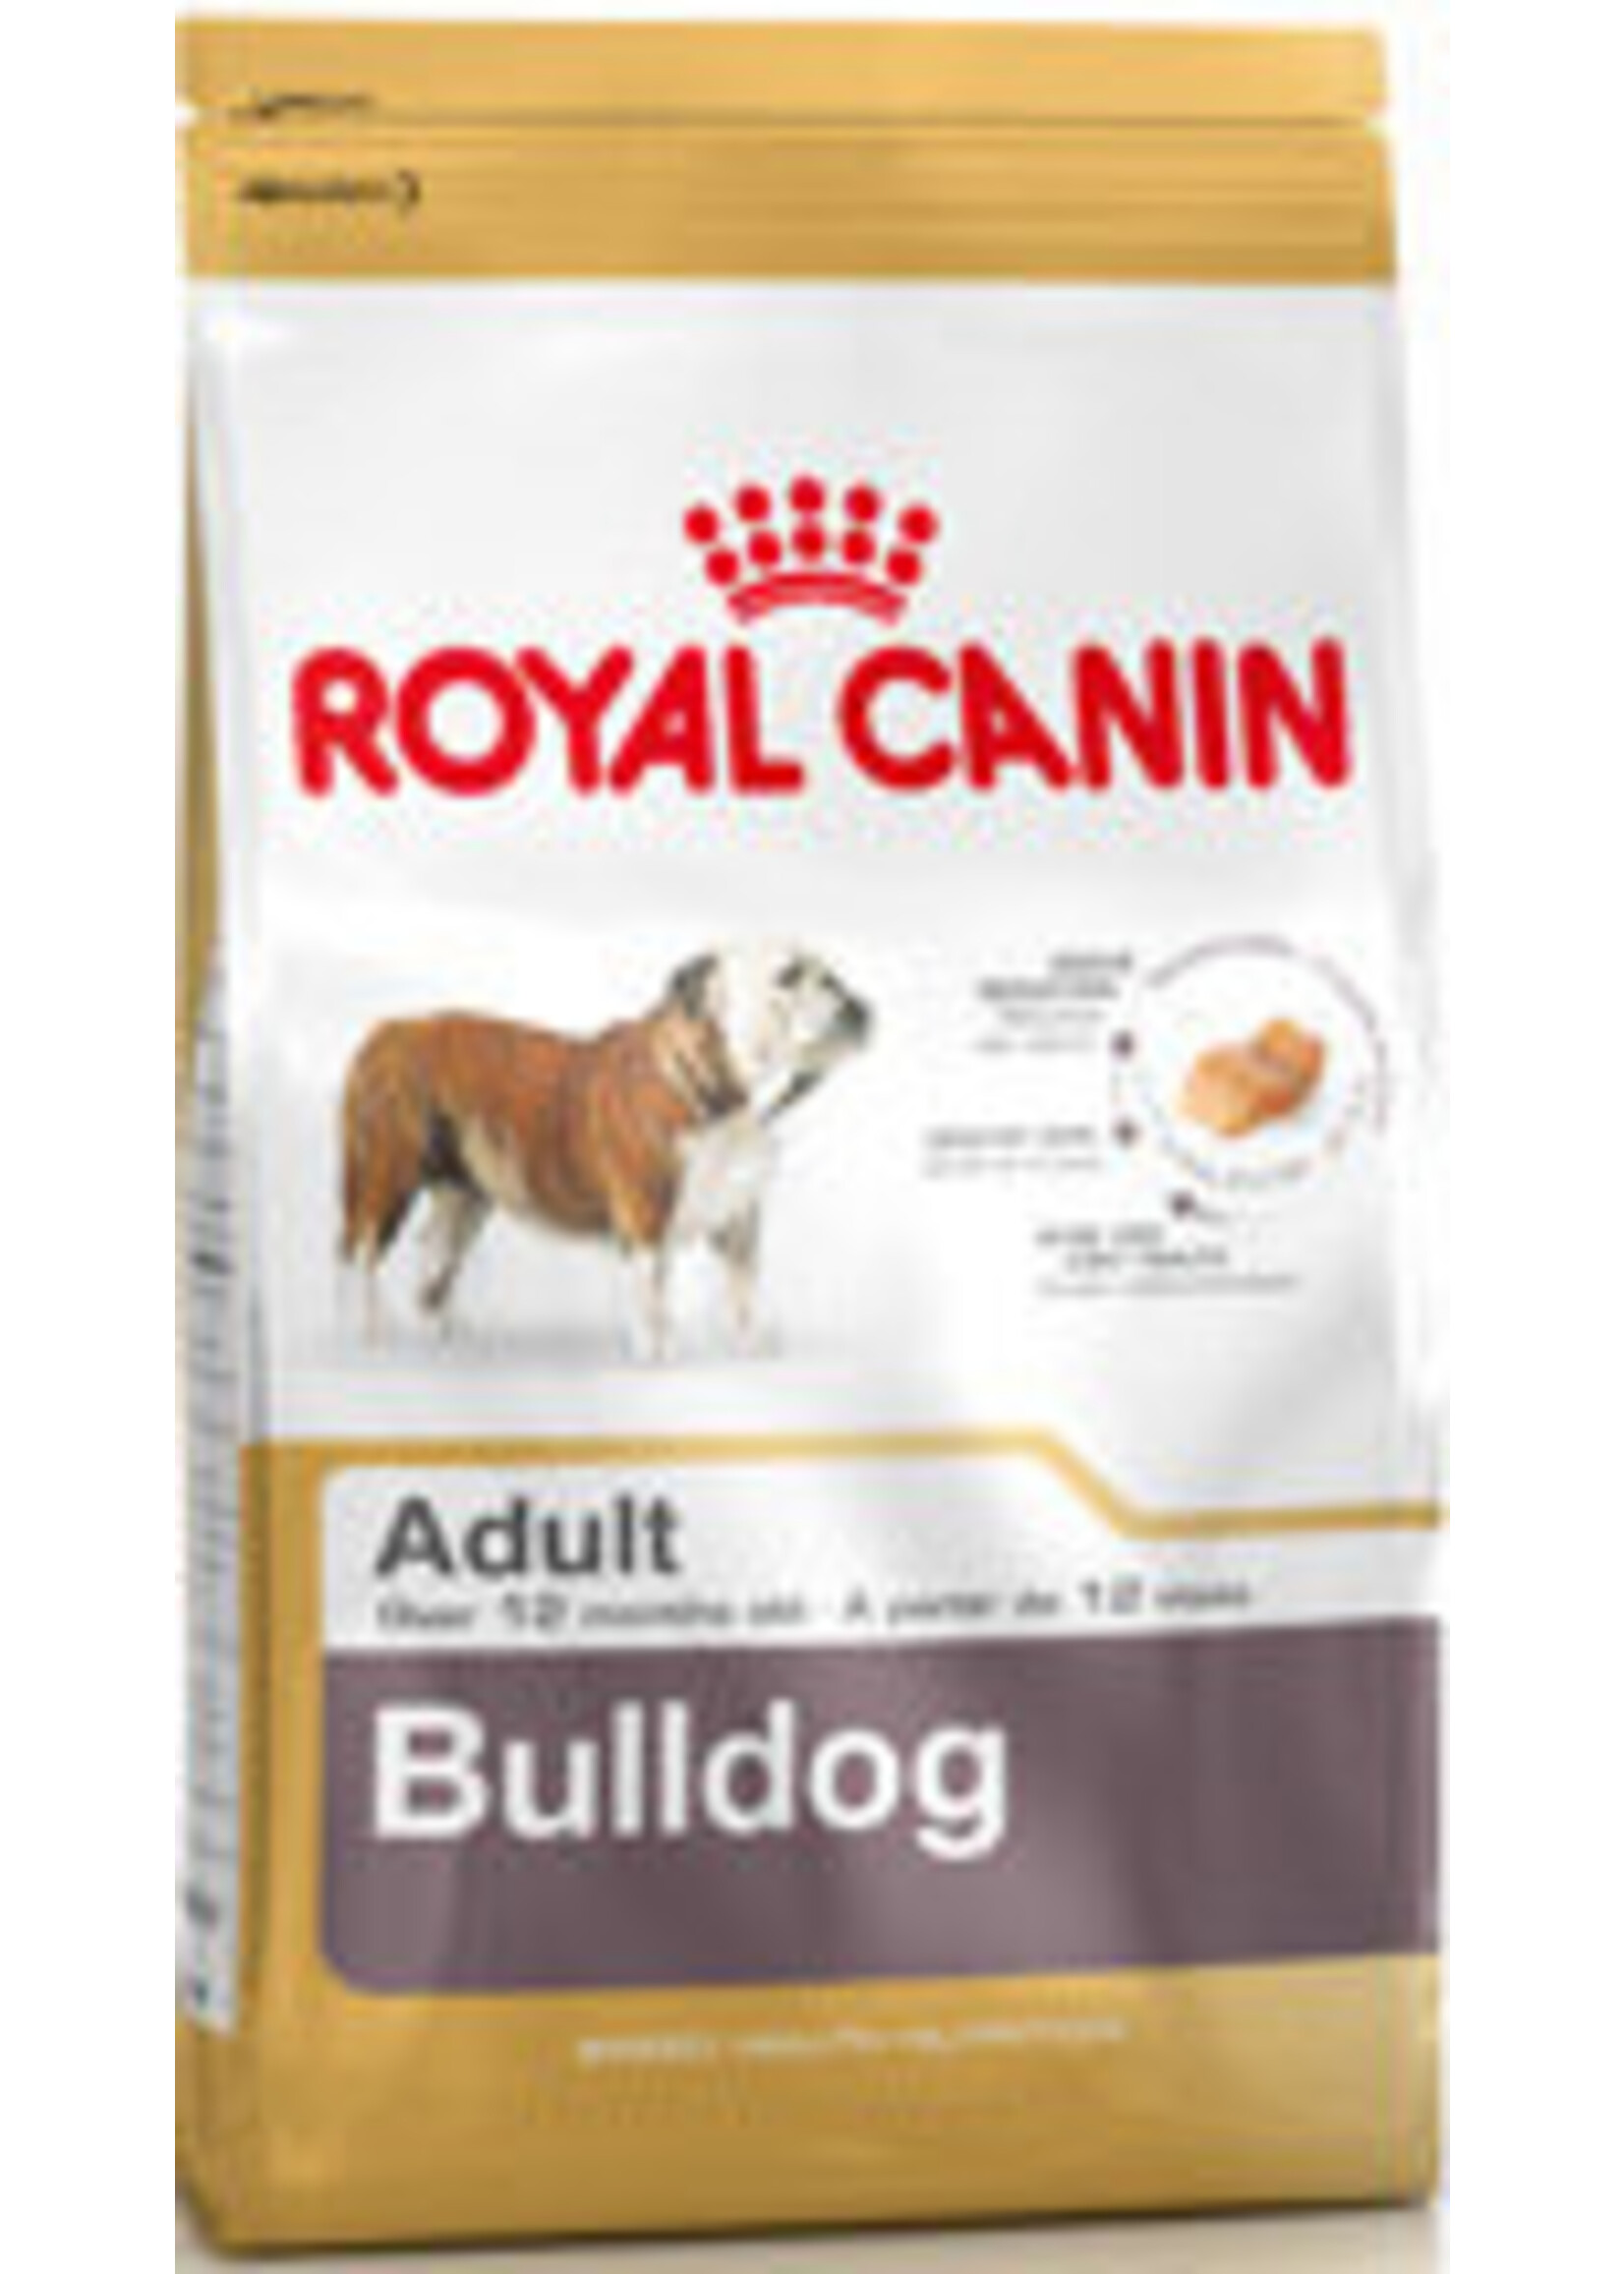 Royal Canin Royal Canin Bhn Bulldog English 3kg